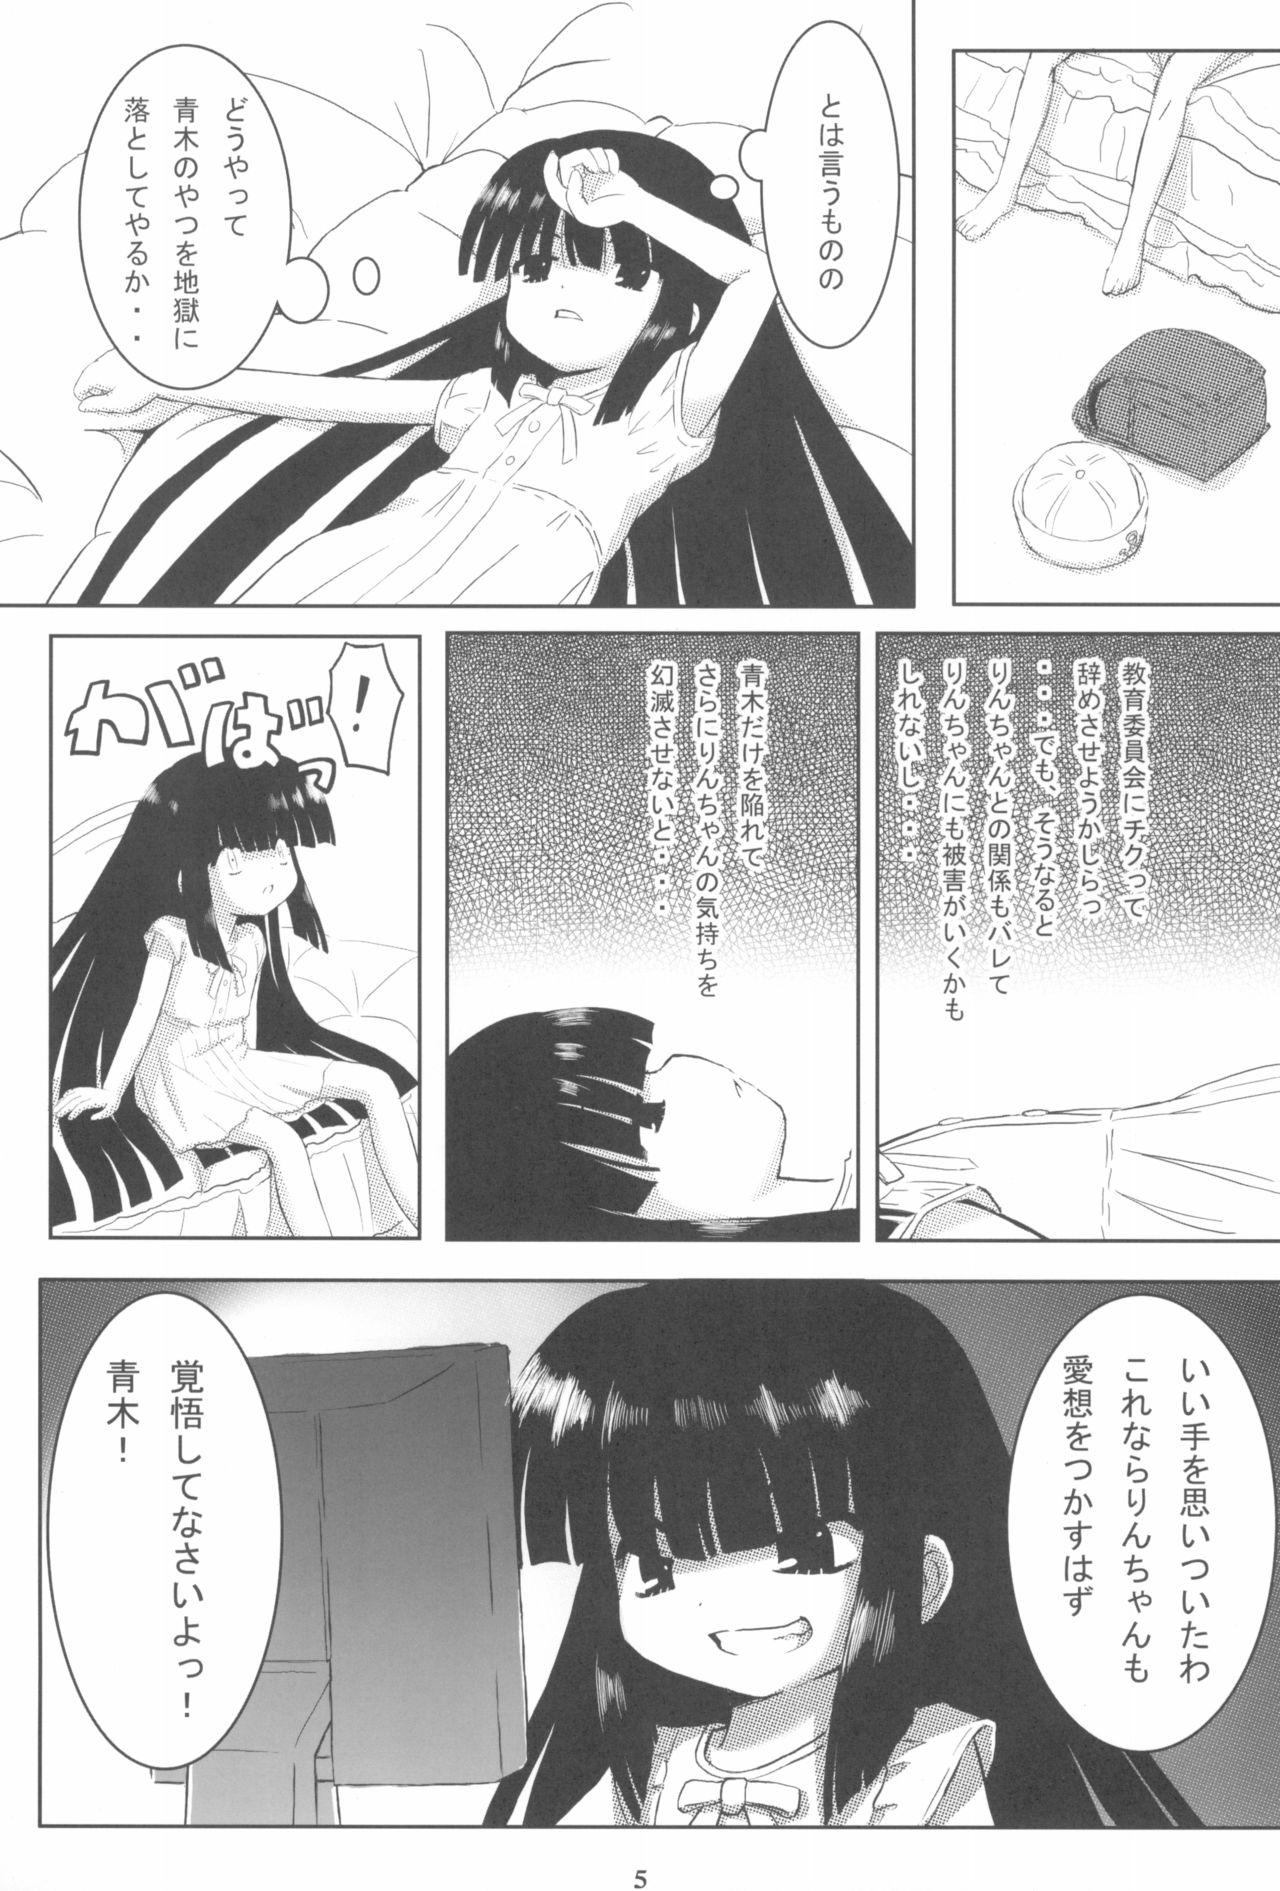 Teenage Kuro Masterpiece War! - Kodomo no jikan Nurugel - Page 5